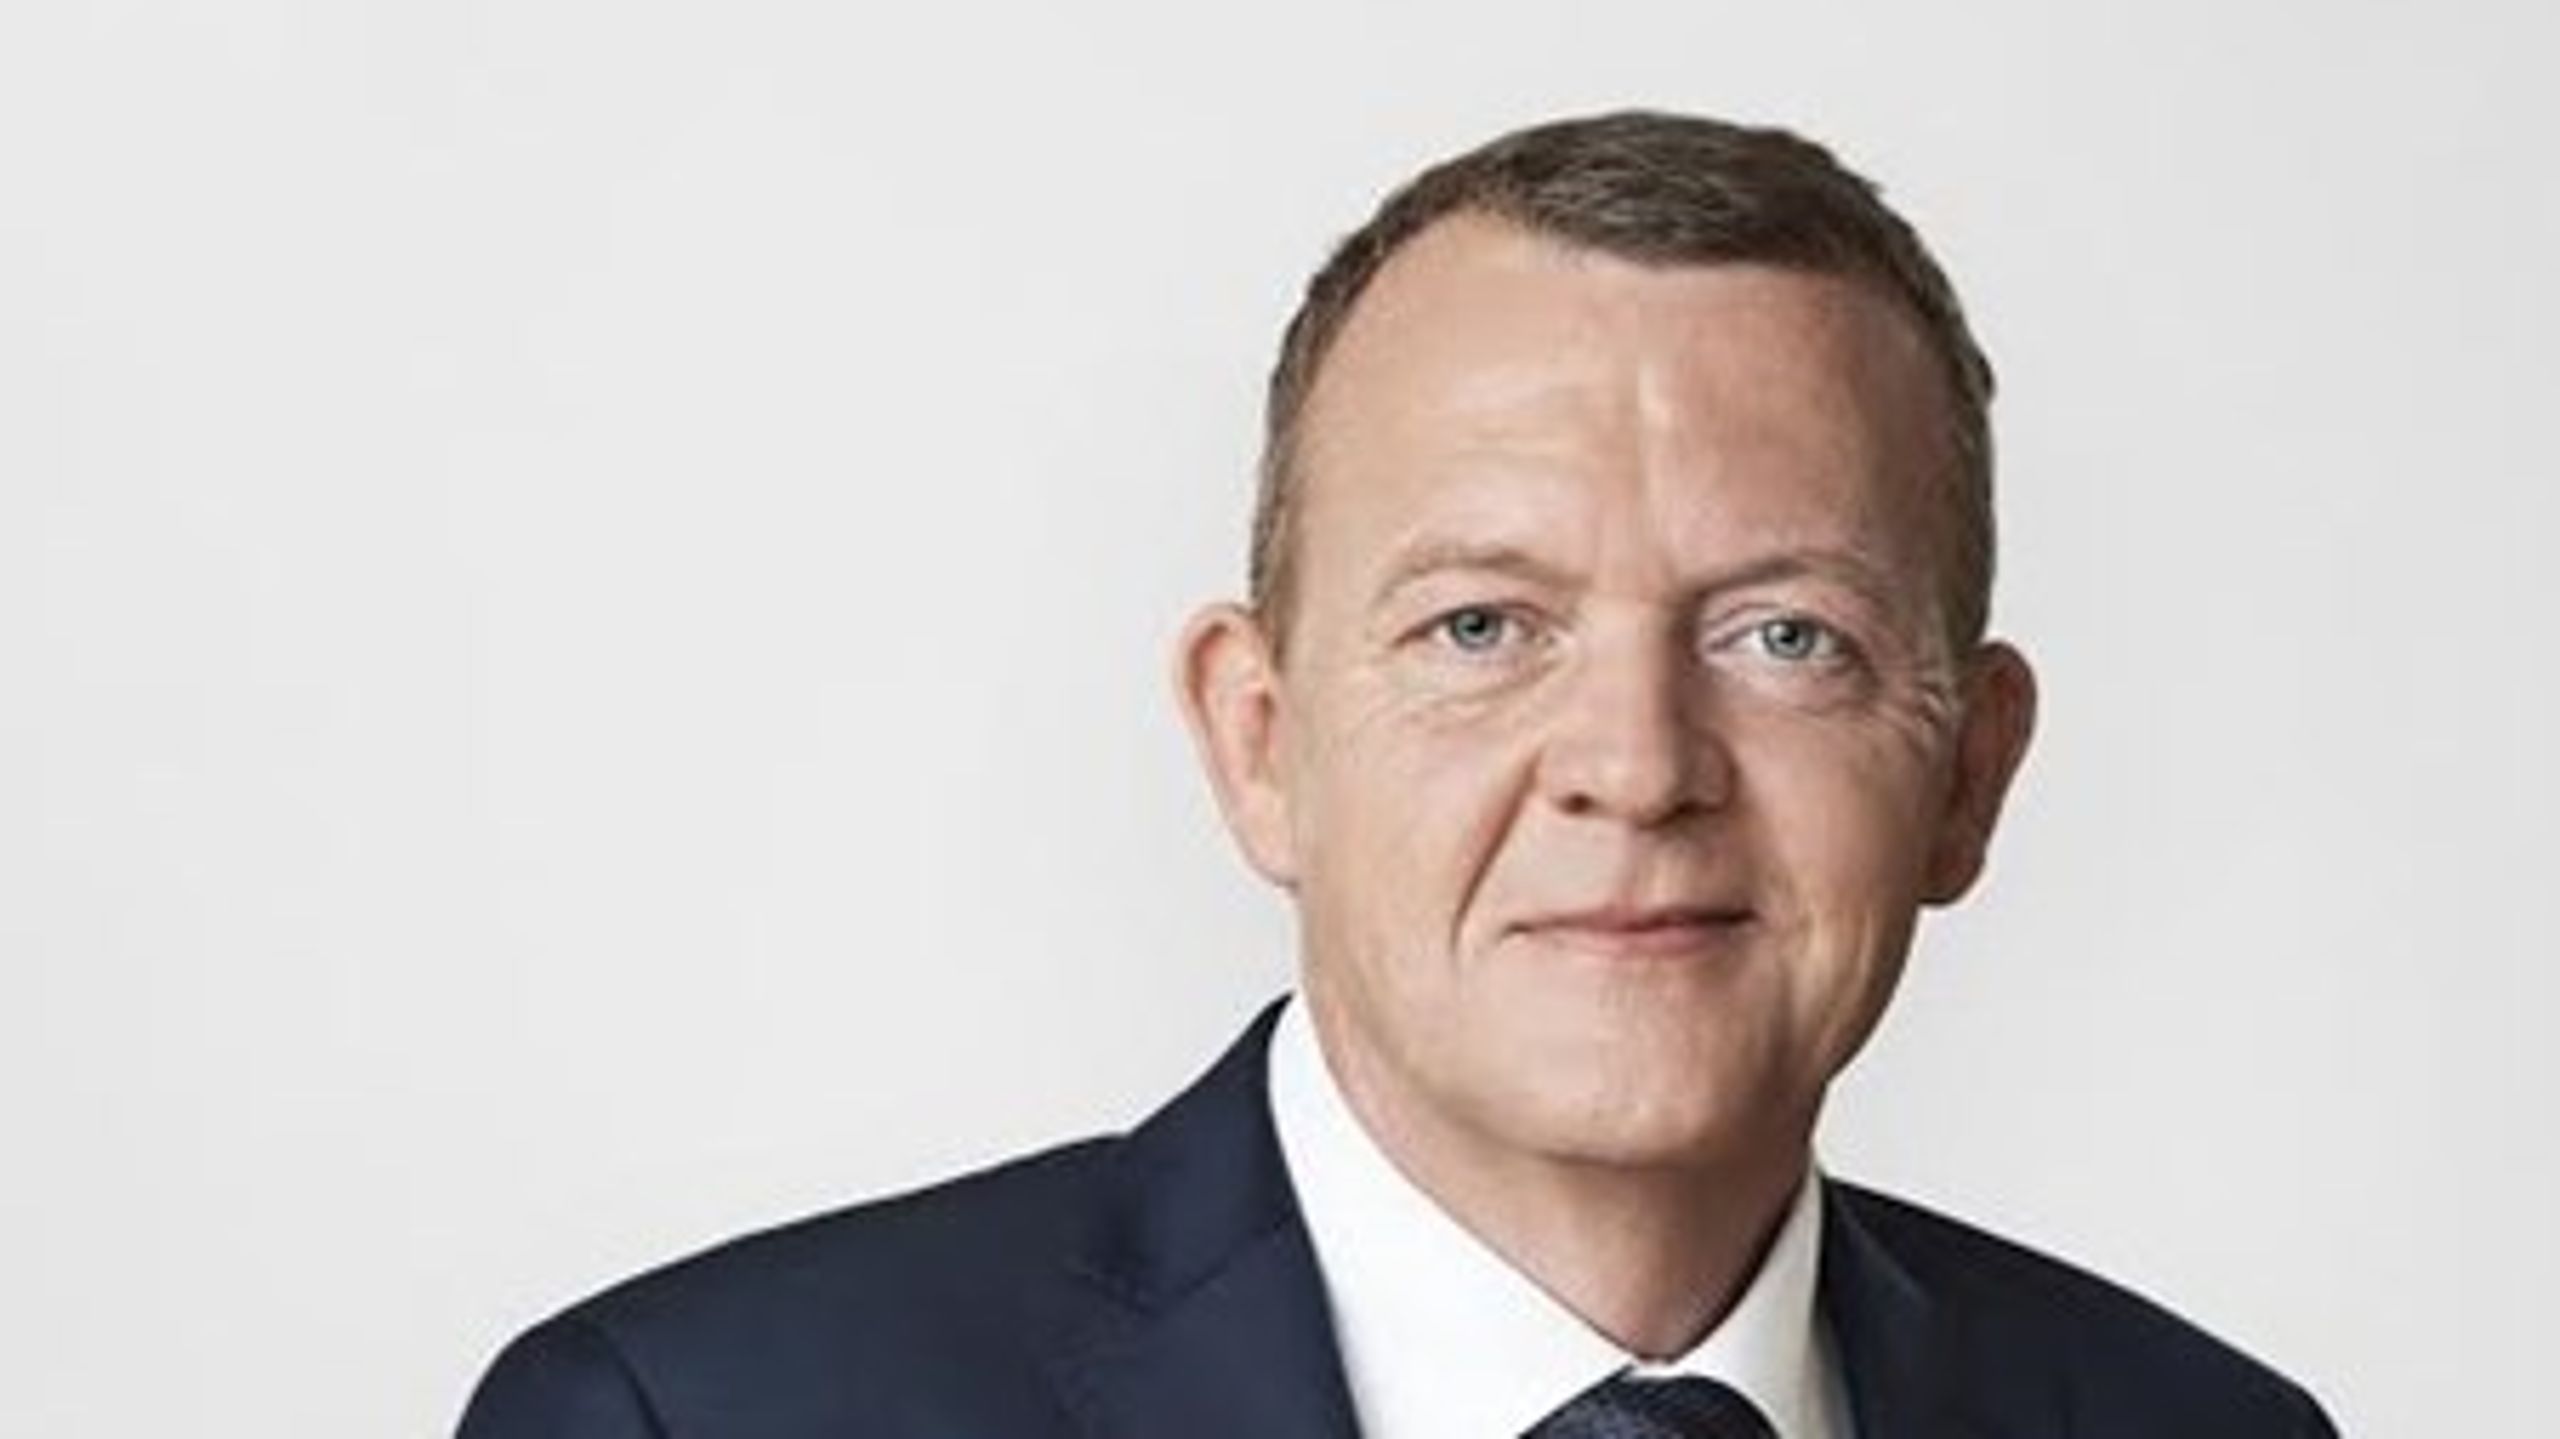 Ensam är stark. Venstres partiledare Lars Løkke Rasmussen har gett upp försöken att få med något annat parti i regeringen.